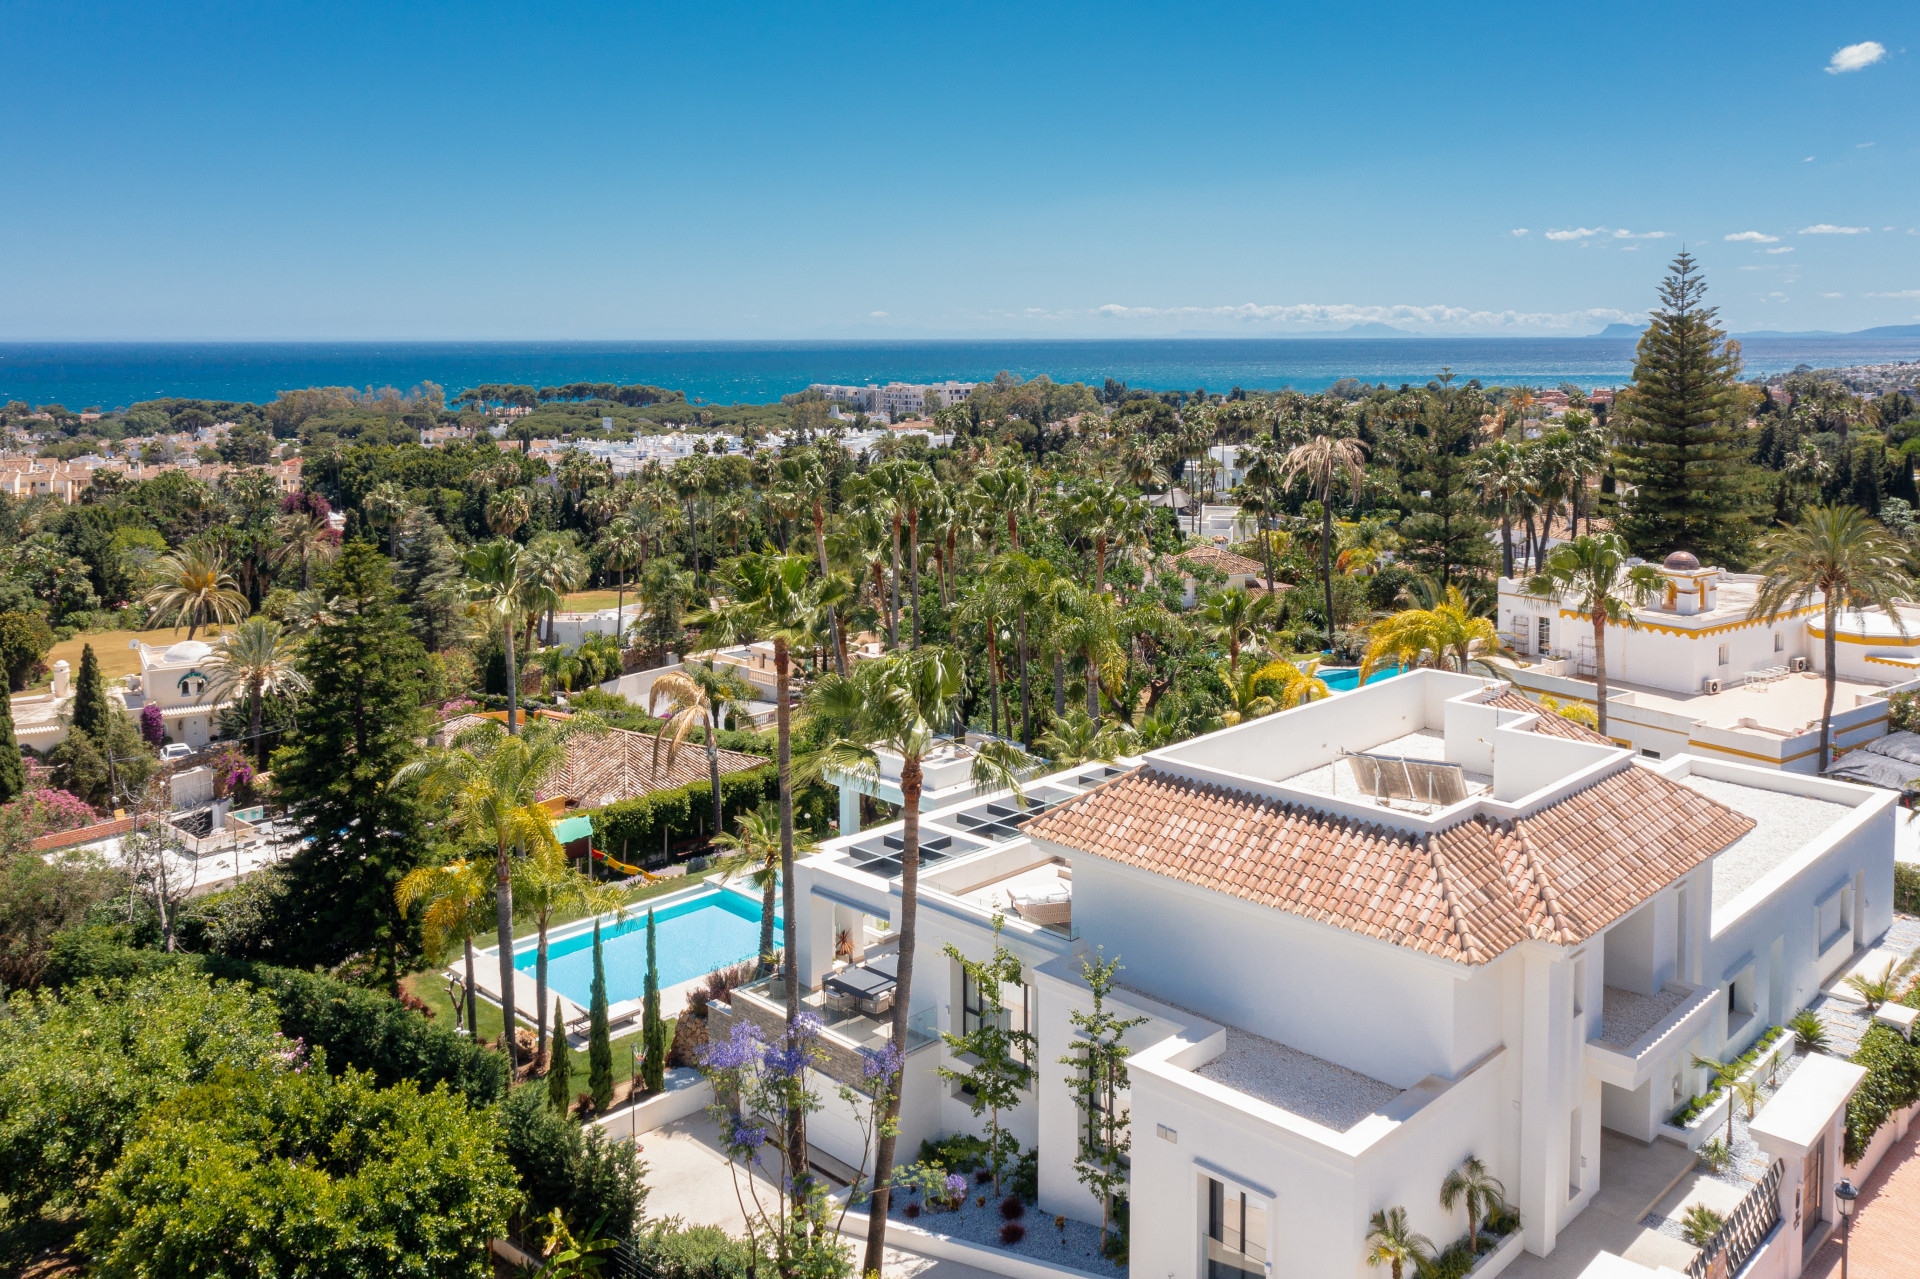 Magnífica villa a estrenar con las vistas al mar más impresionantes situada en la exclusiva zona de El Paraiso